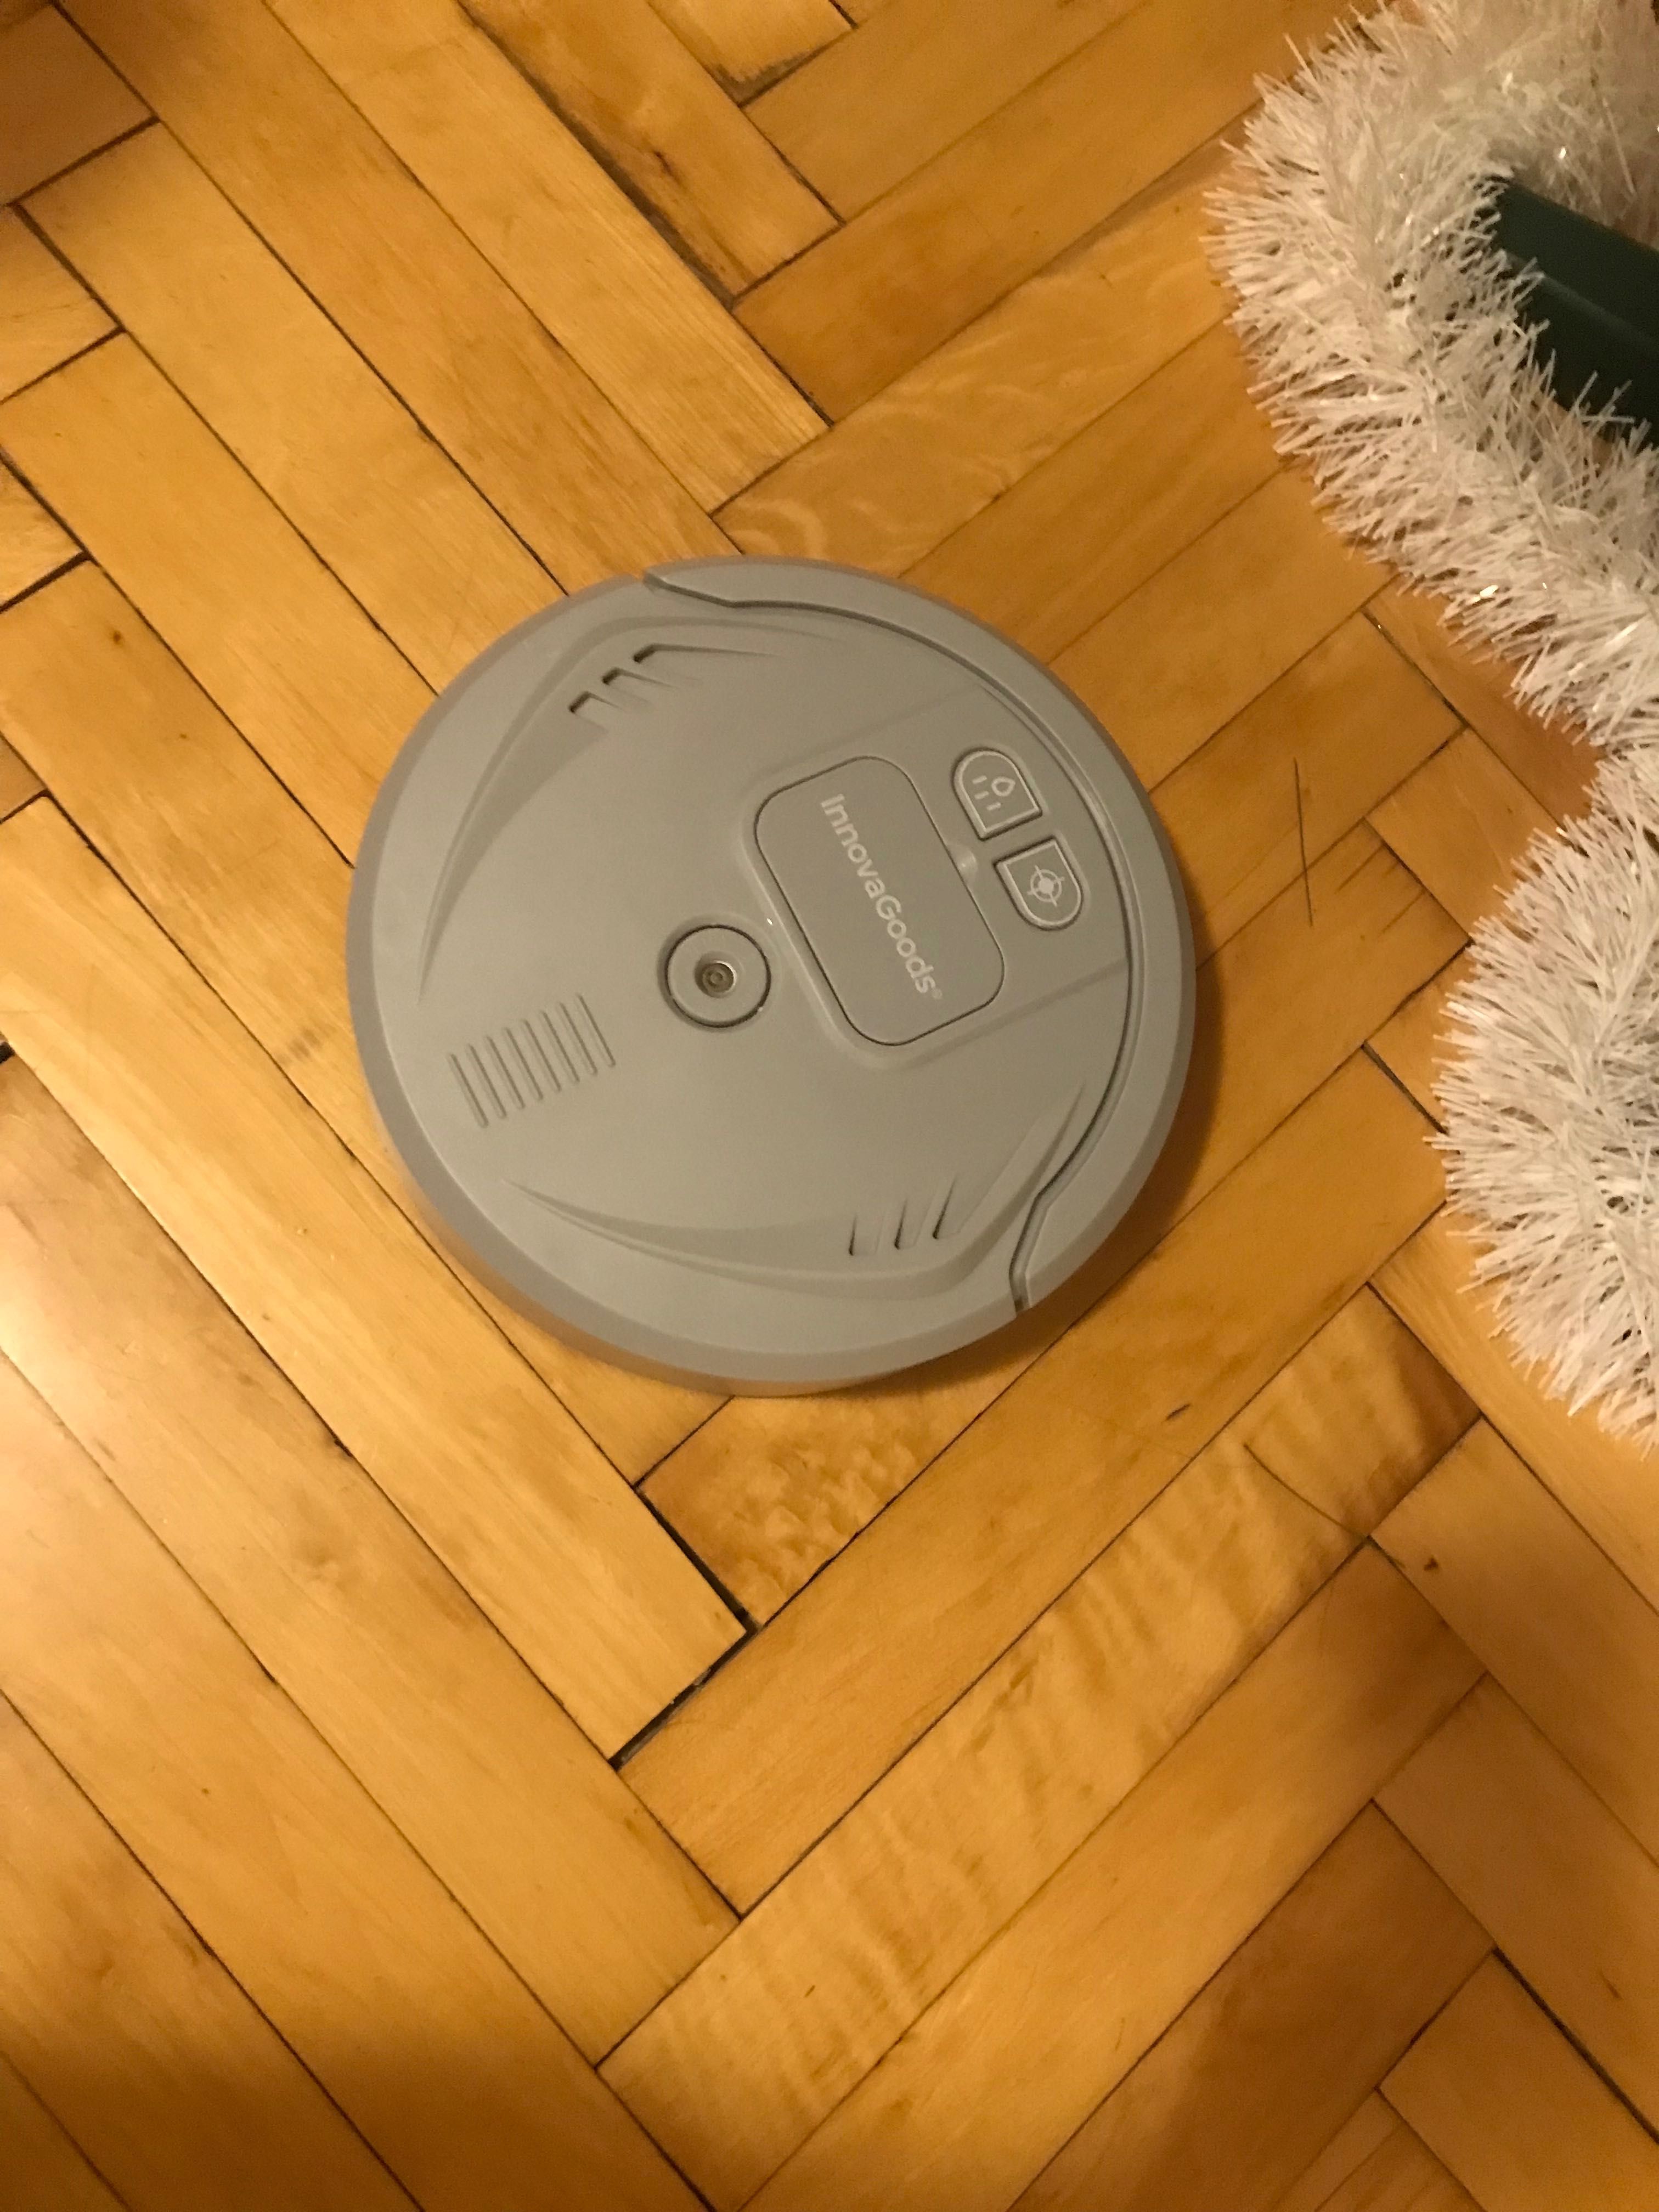 Kilnbot UV 4in1 robot vacuum floor cleaner